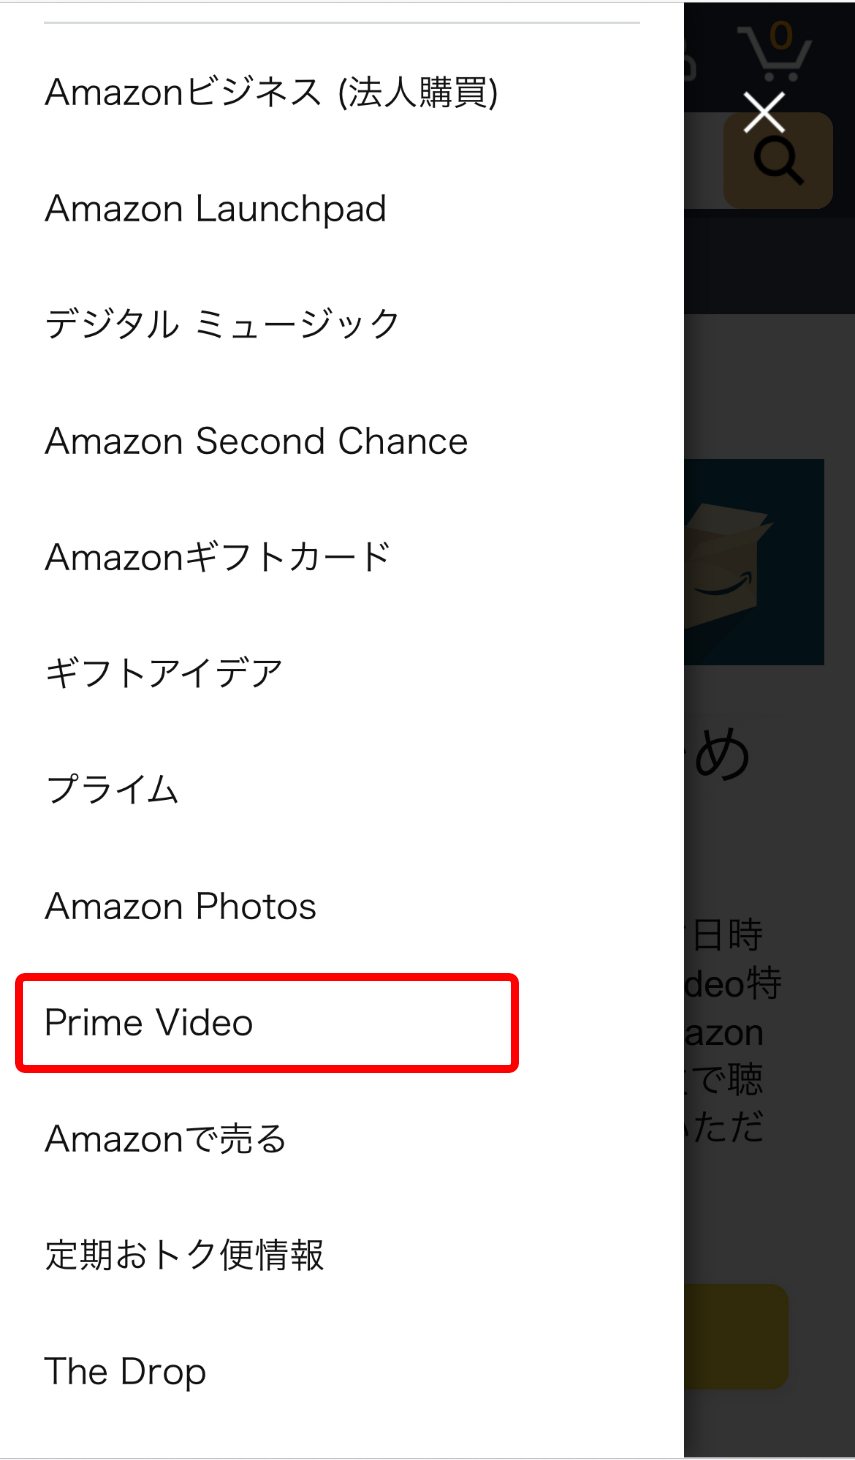 スマホのAmazon公式サイトのメニューの項目「Prime Video」を赤枠で囲ったキャプチャ画像